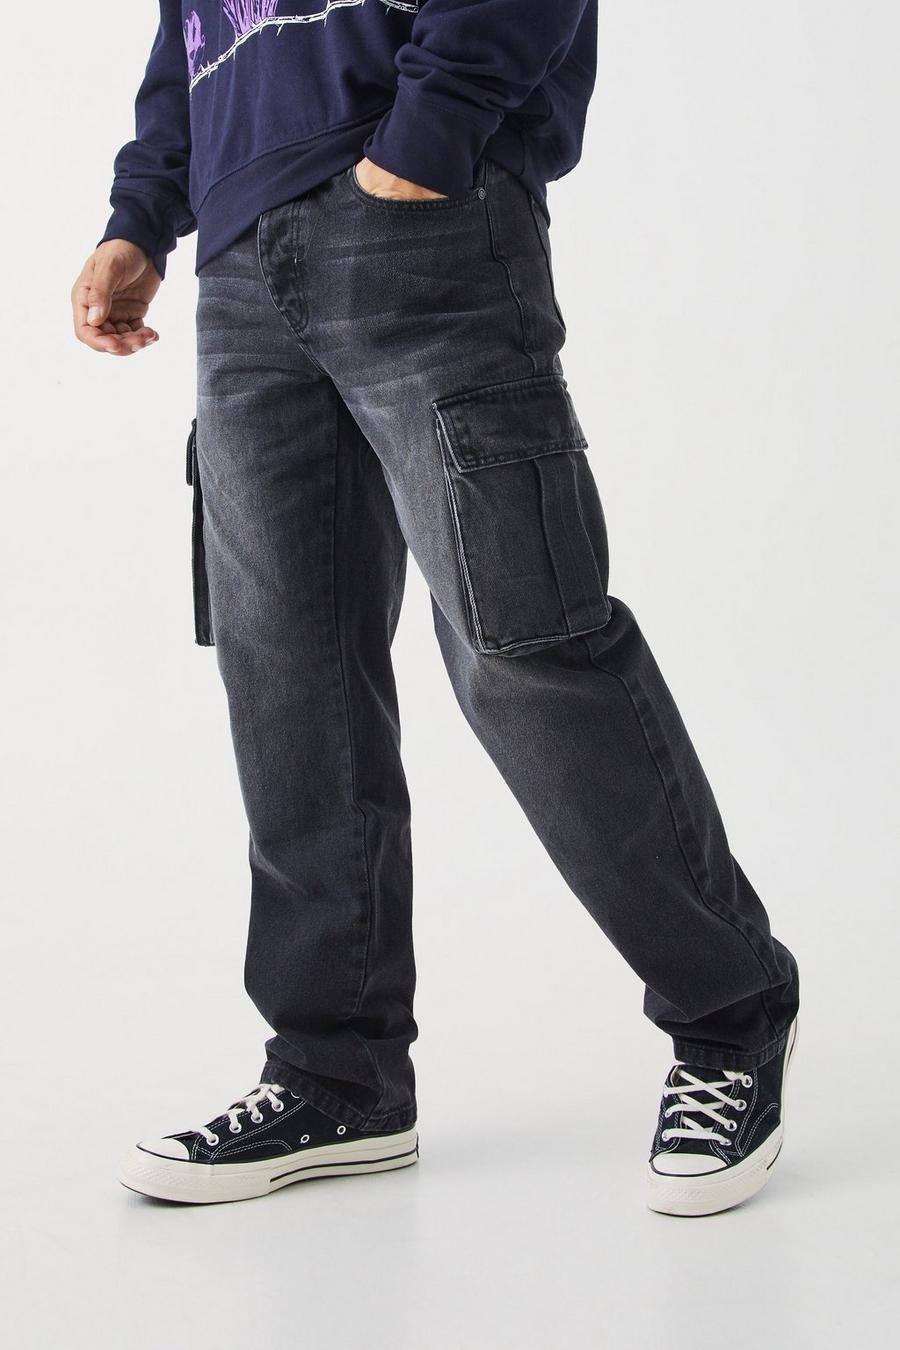 przecierane czarne spodnie jeansy bojówki rurki